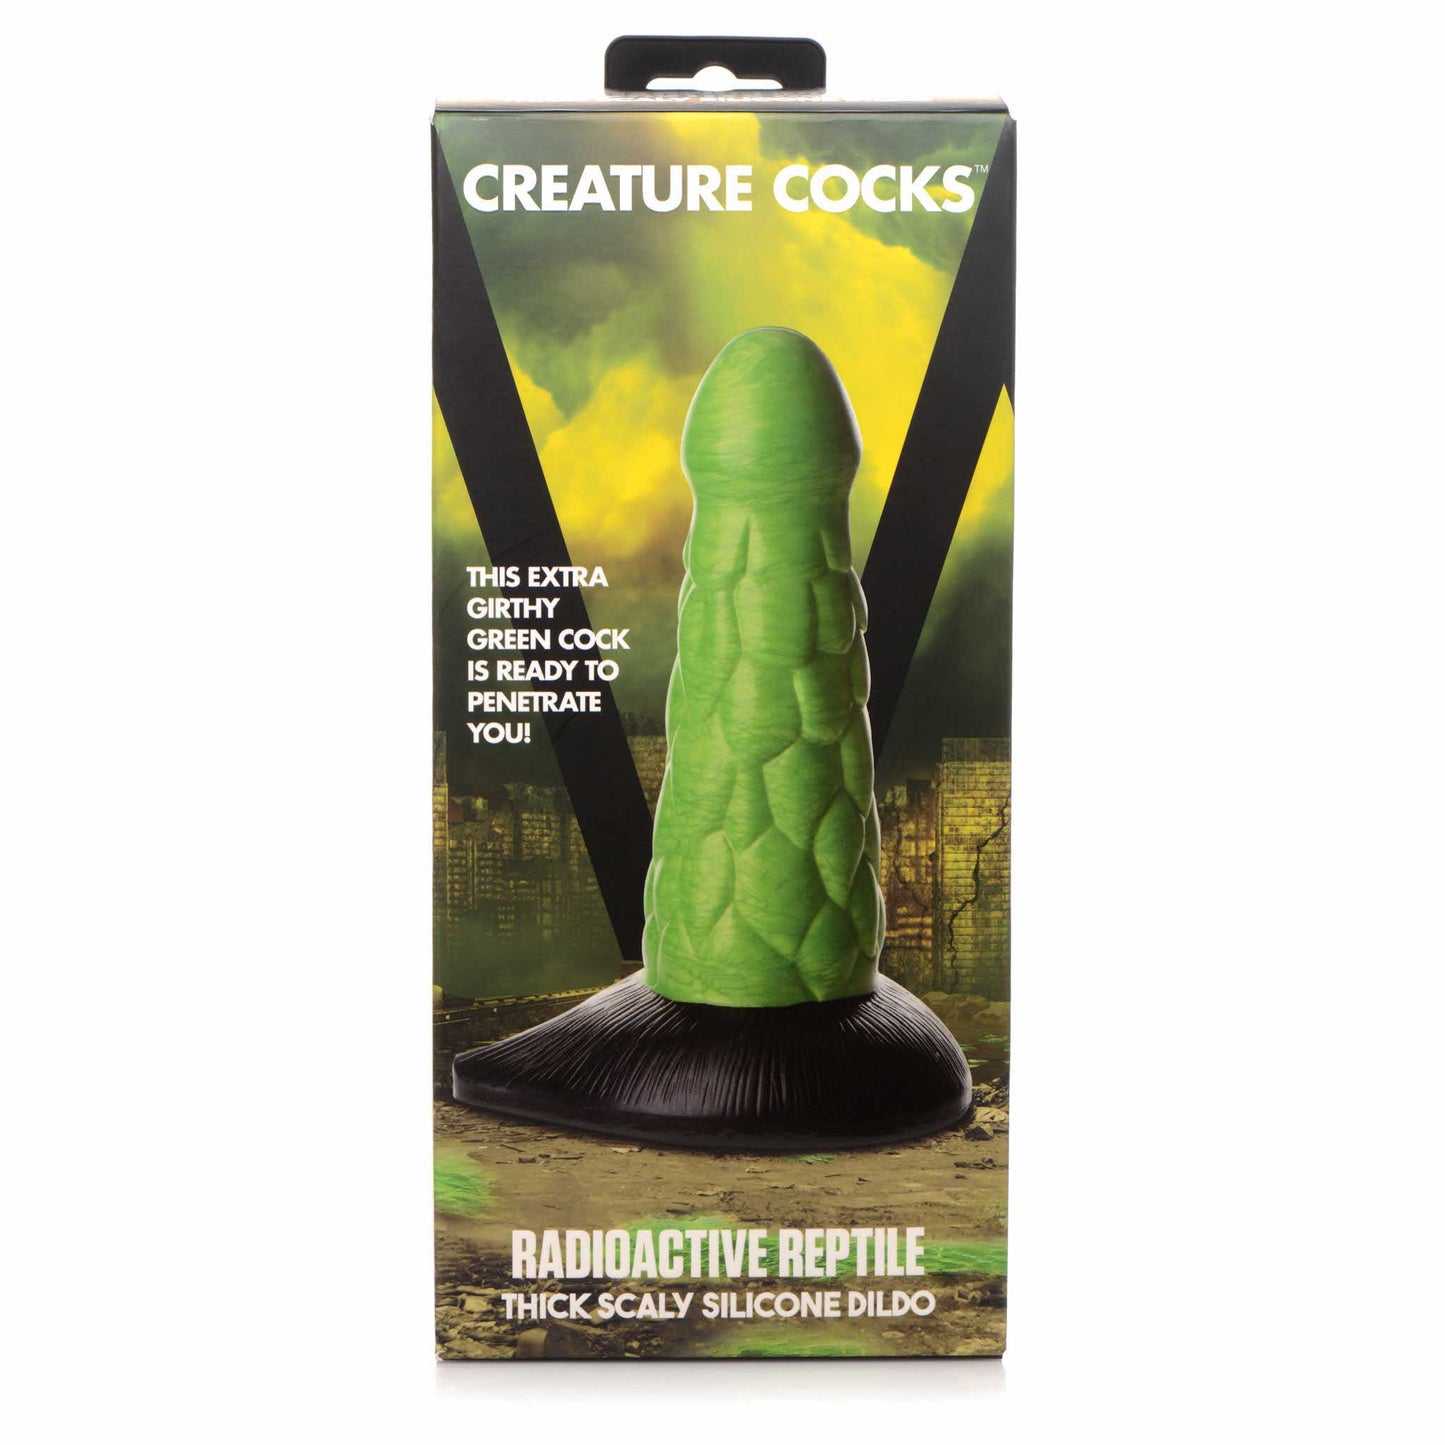 Creature Cocks Radioactive Reptile Thick Scaly Silicone Dildo